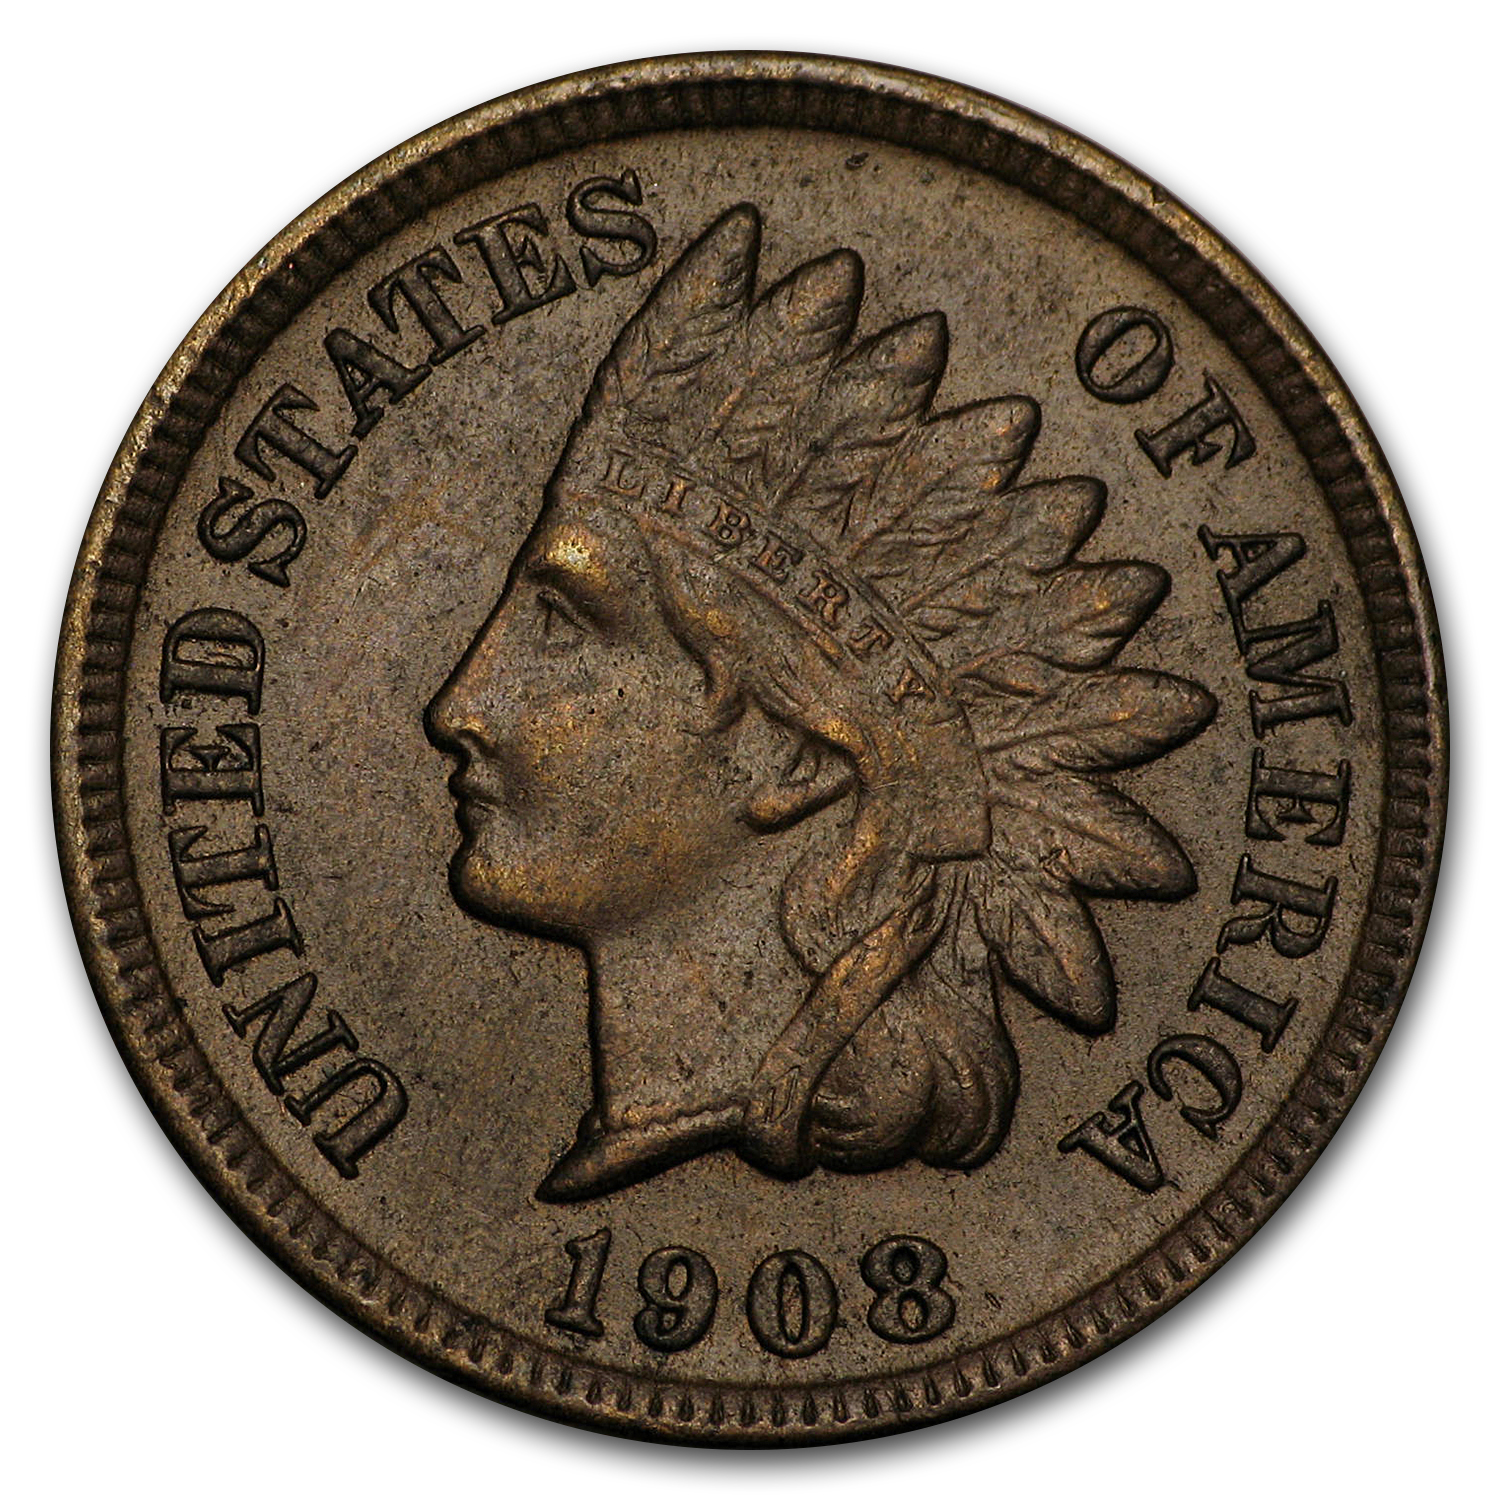 Buy 1908-S Indian Head Cent AU